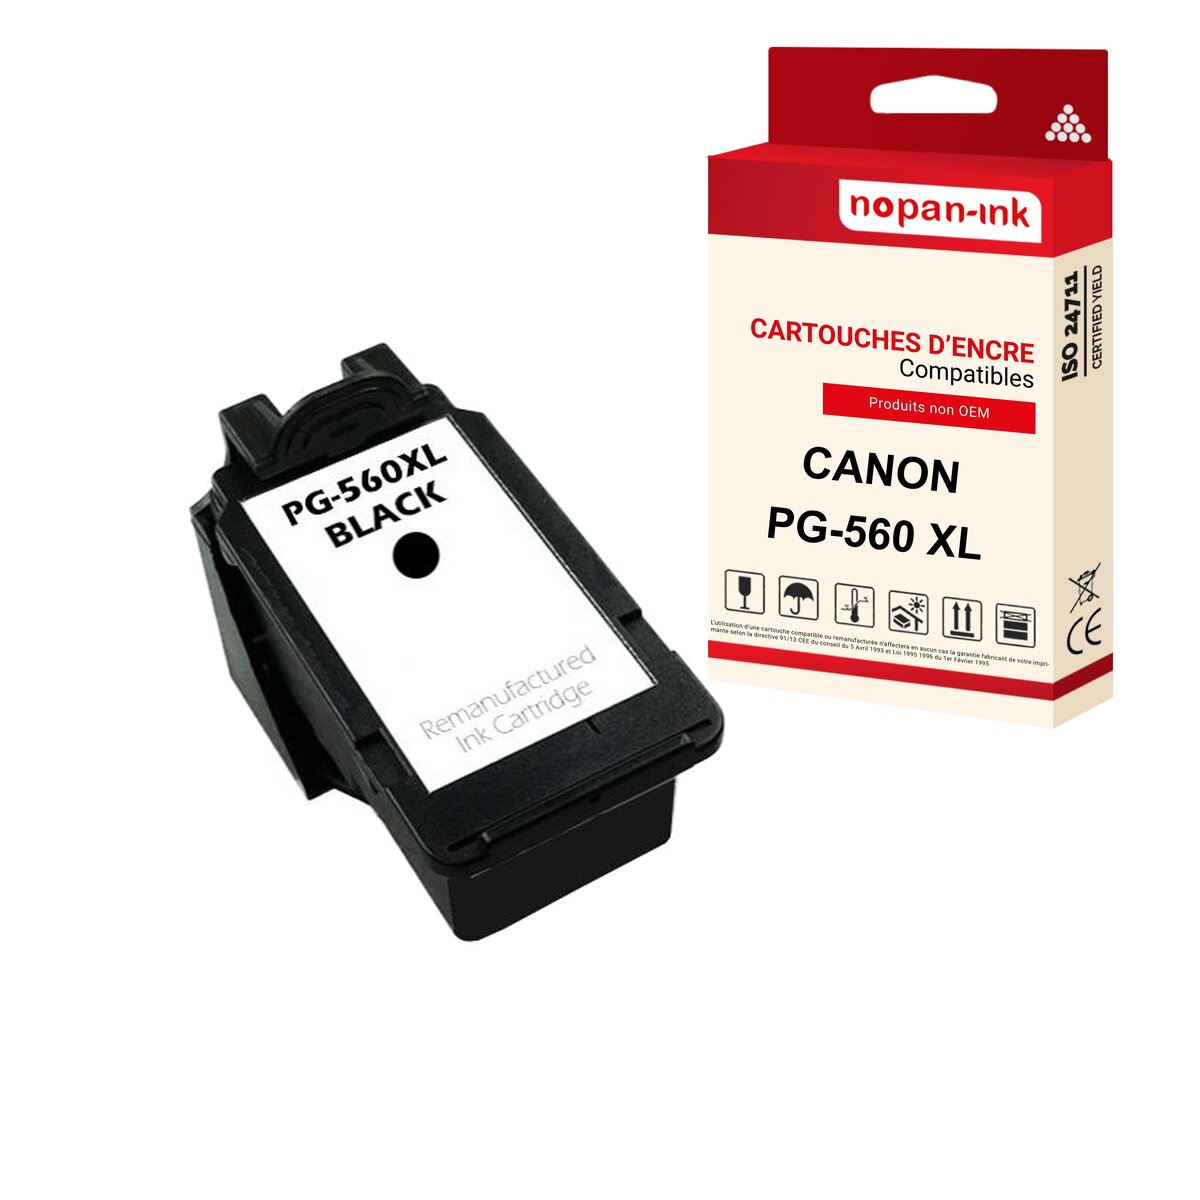 Nopan-ink - x1 cartouche canon pg 560 xl pg-560 xl compatible - La Poste